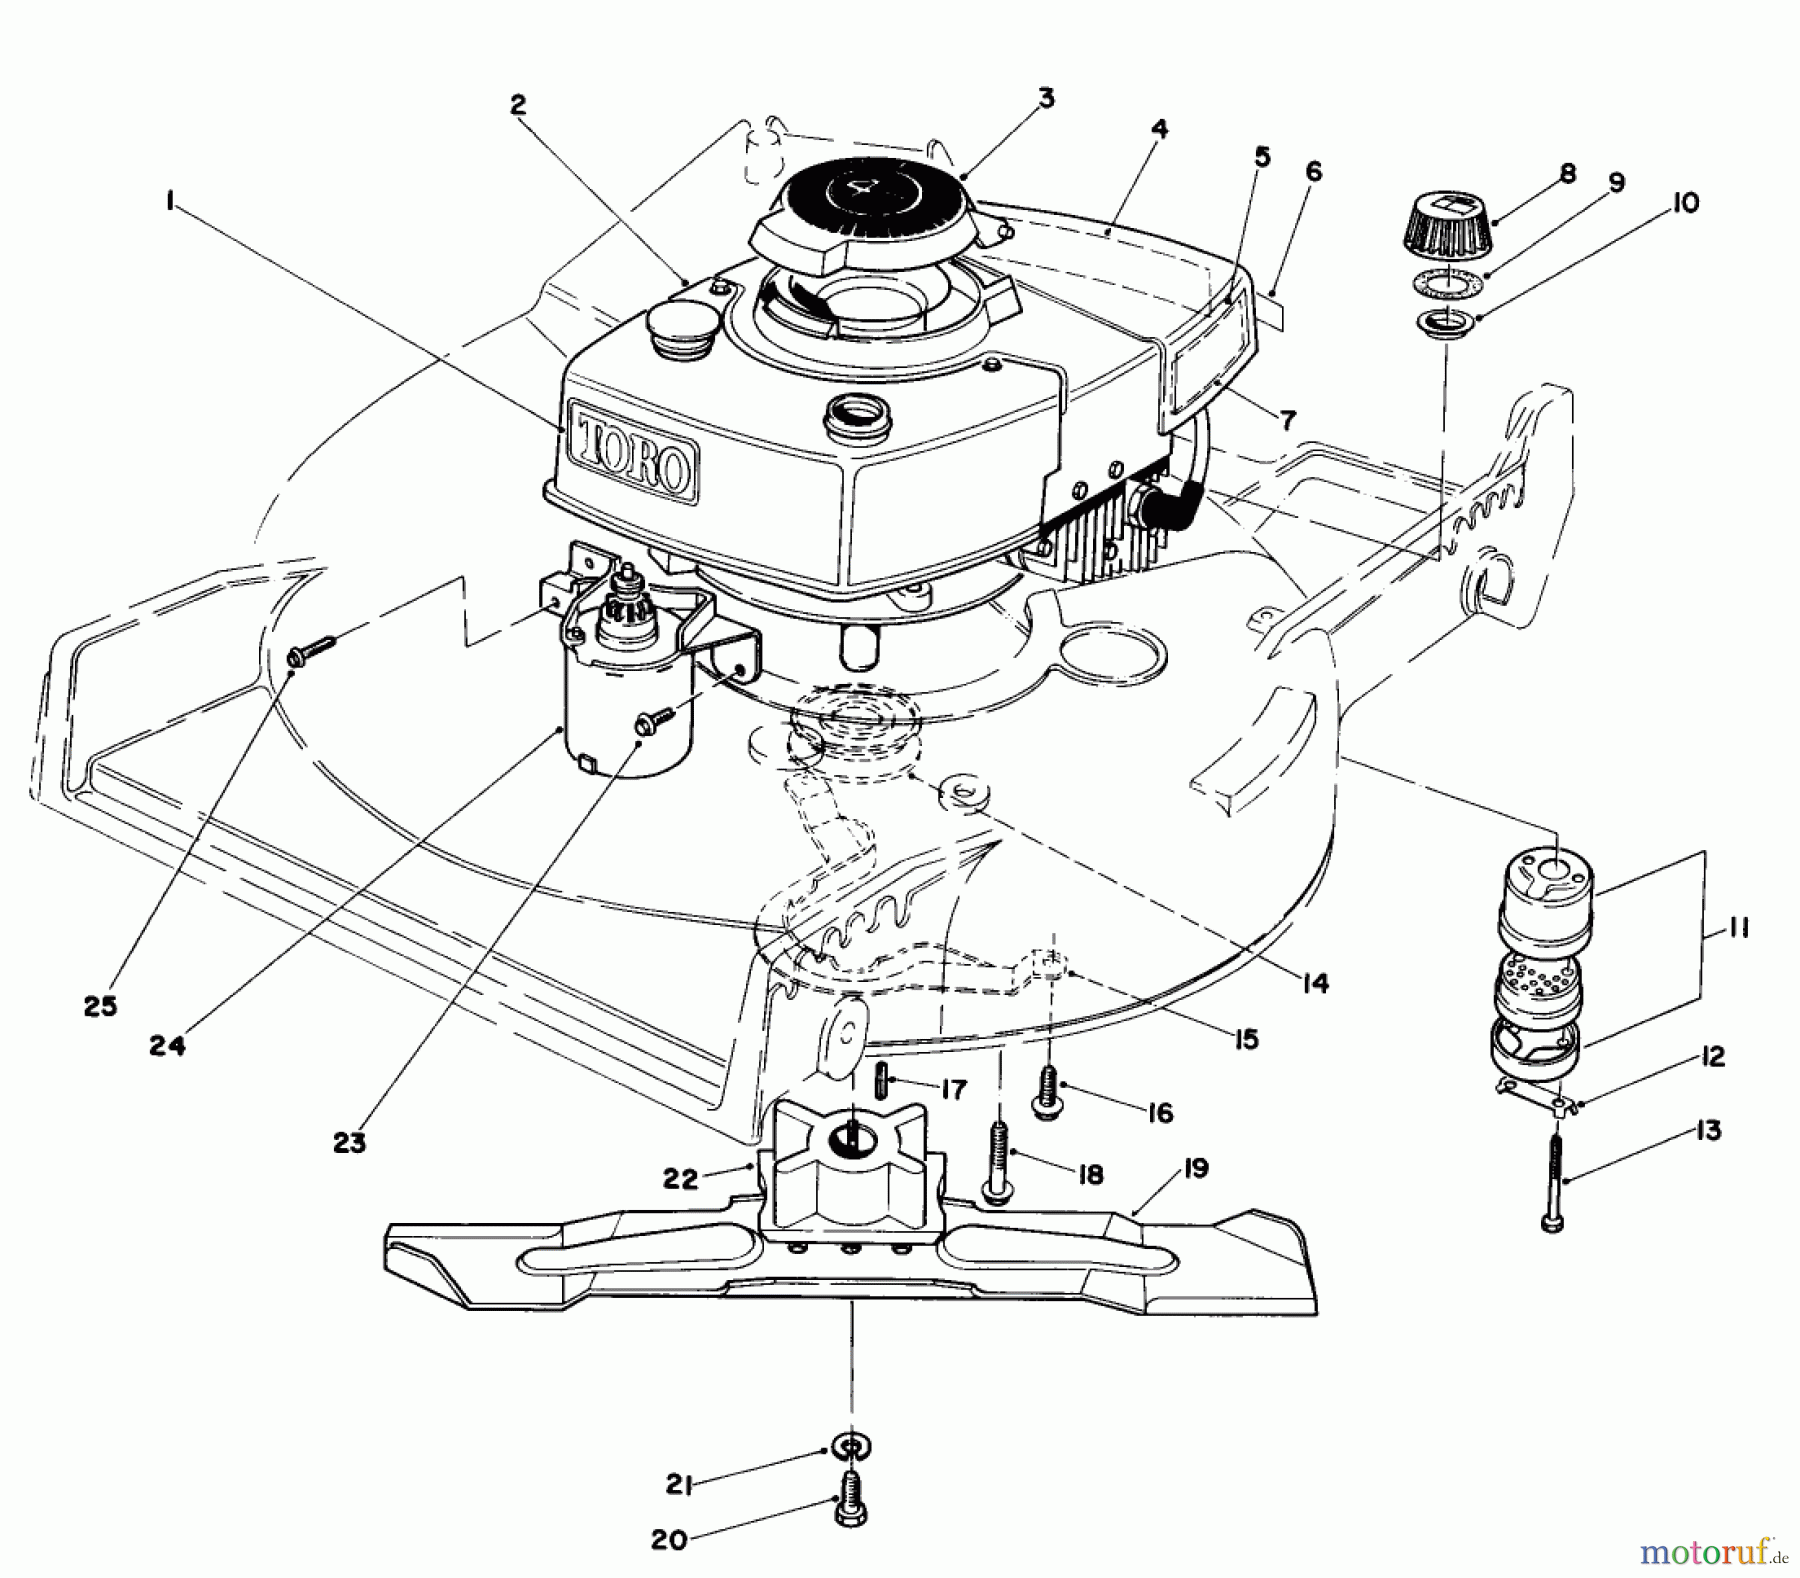  Toro Neu Mowers, Walk-Behind Seite 1 20718 - Toro Lawnmower, 1985 (5000001-5999999) ENGINE ASSEMBLY